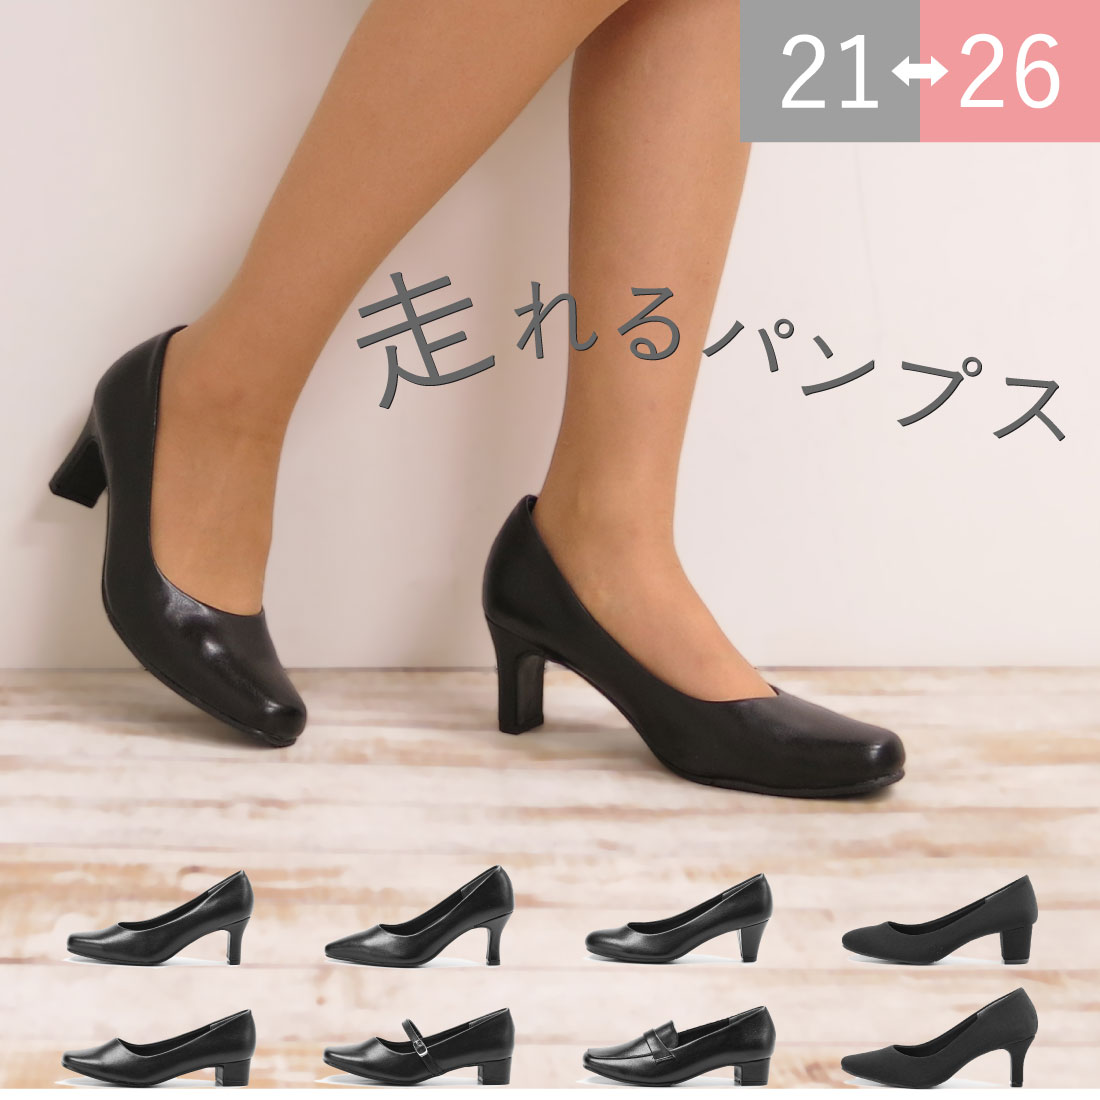 FOOT PLACE 【楽天市場店】 | 欲しい靴がきっと見つかる。